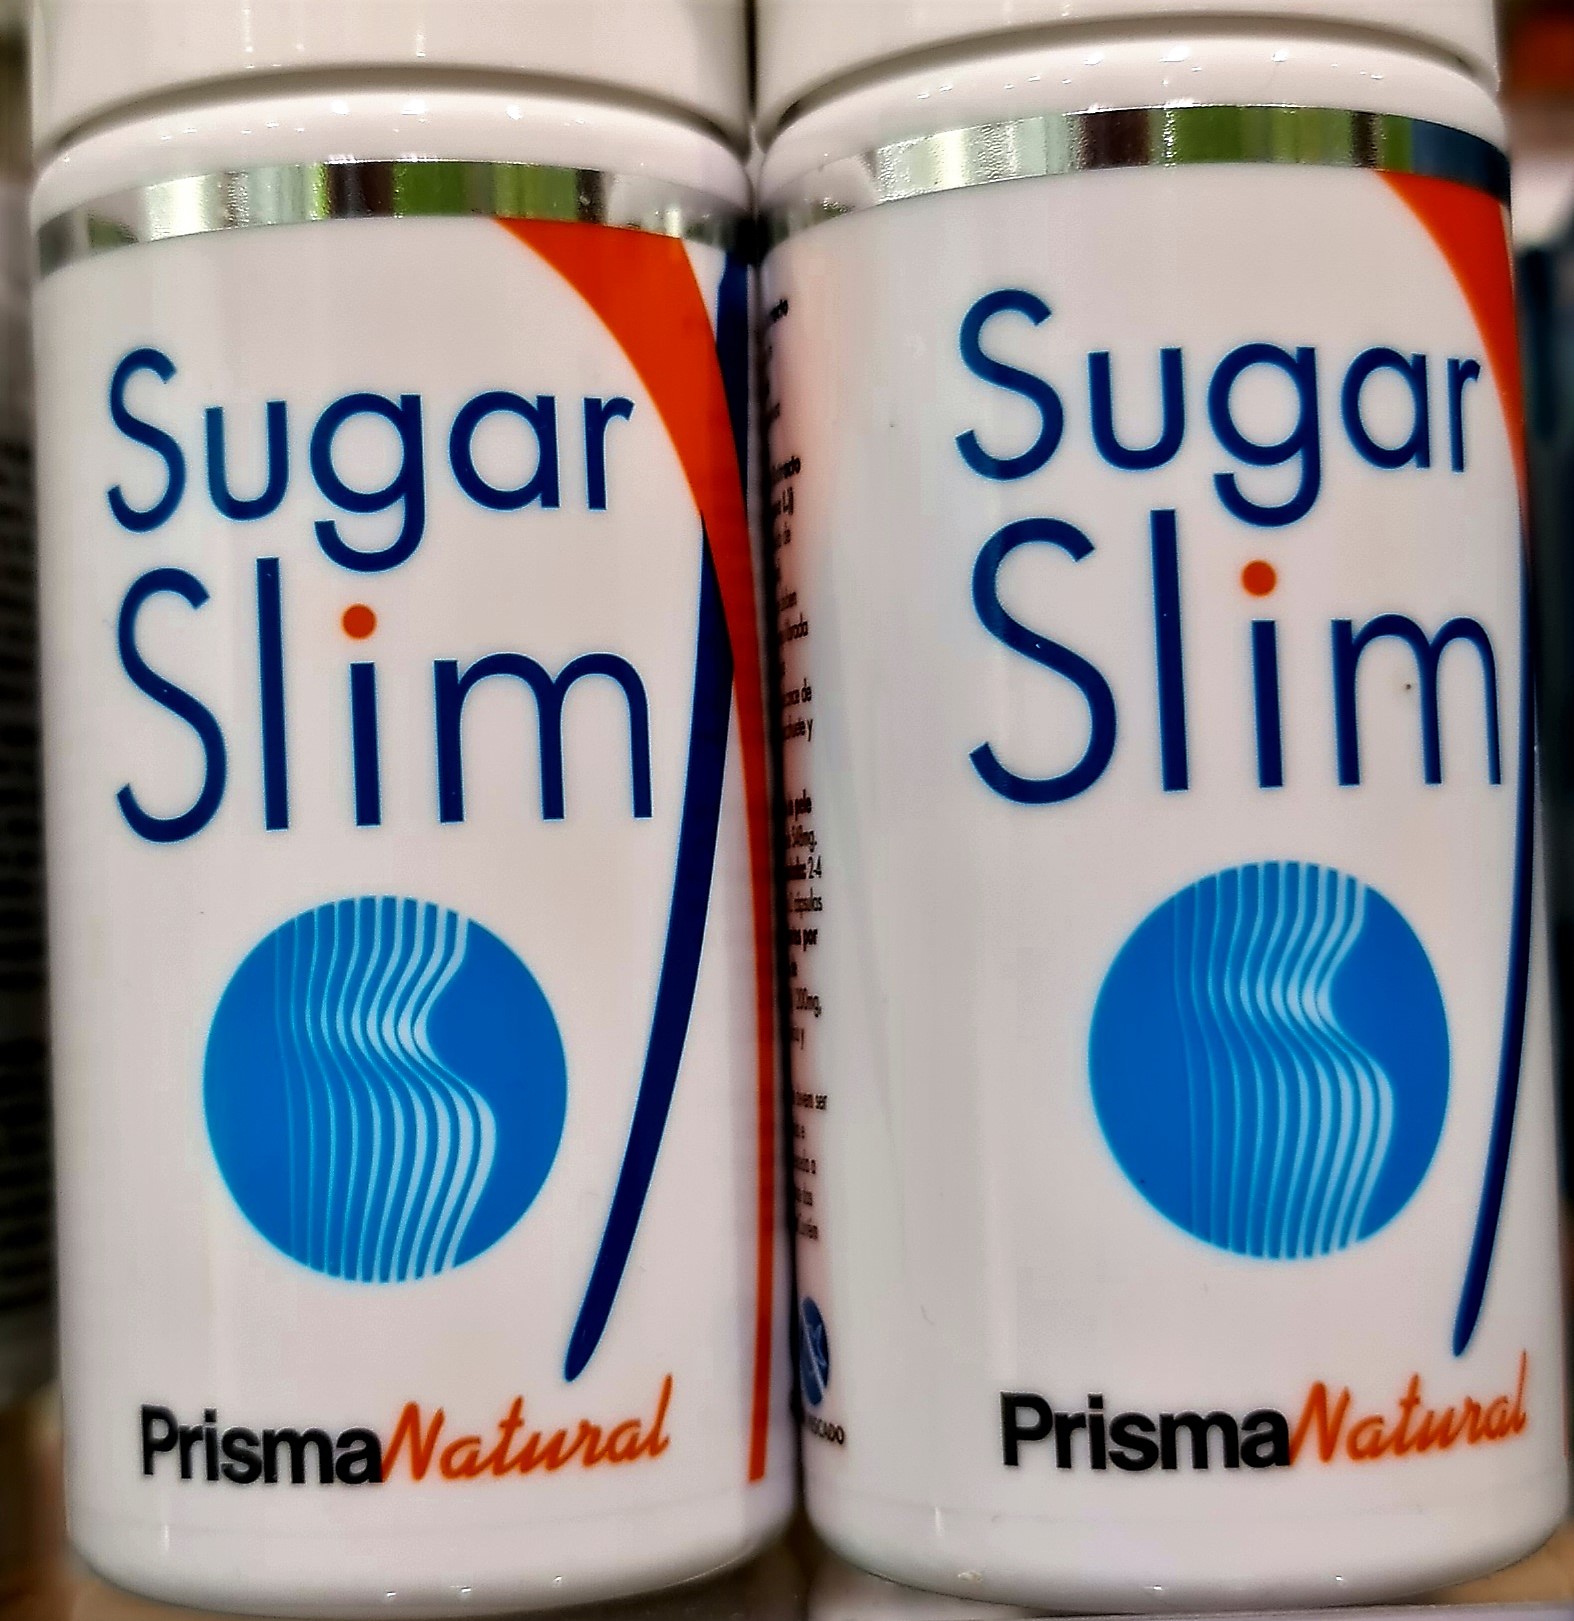 El nuevo Sugar Slim de Prisma Natural es un producto de origen vegetal que disminuye por primera vez hasta un 86% la ingesta de calorías en las comidas ricas en hidratos de carbono y regula el nivel de glucosa en sangre